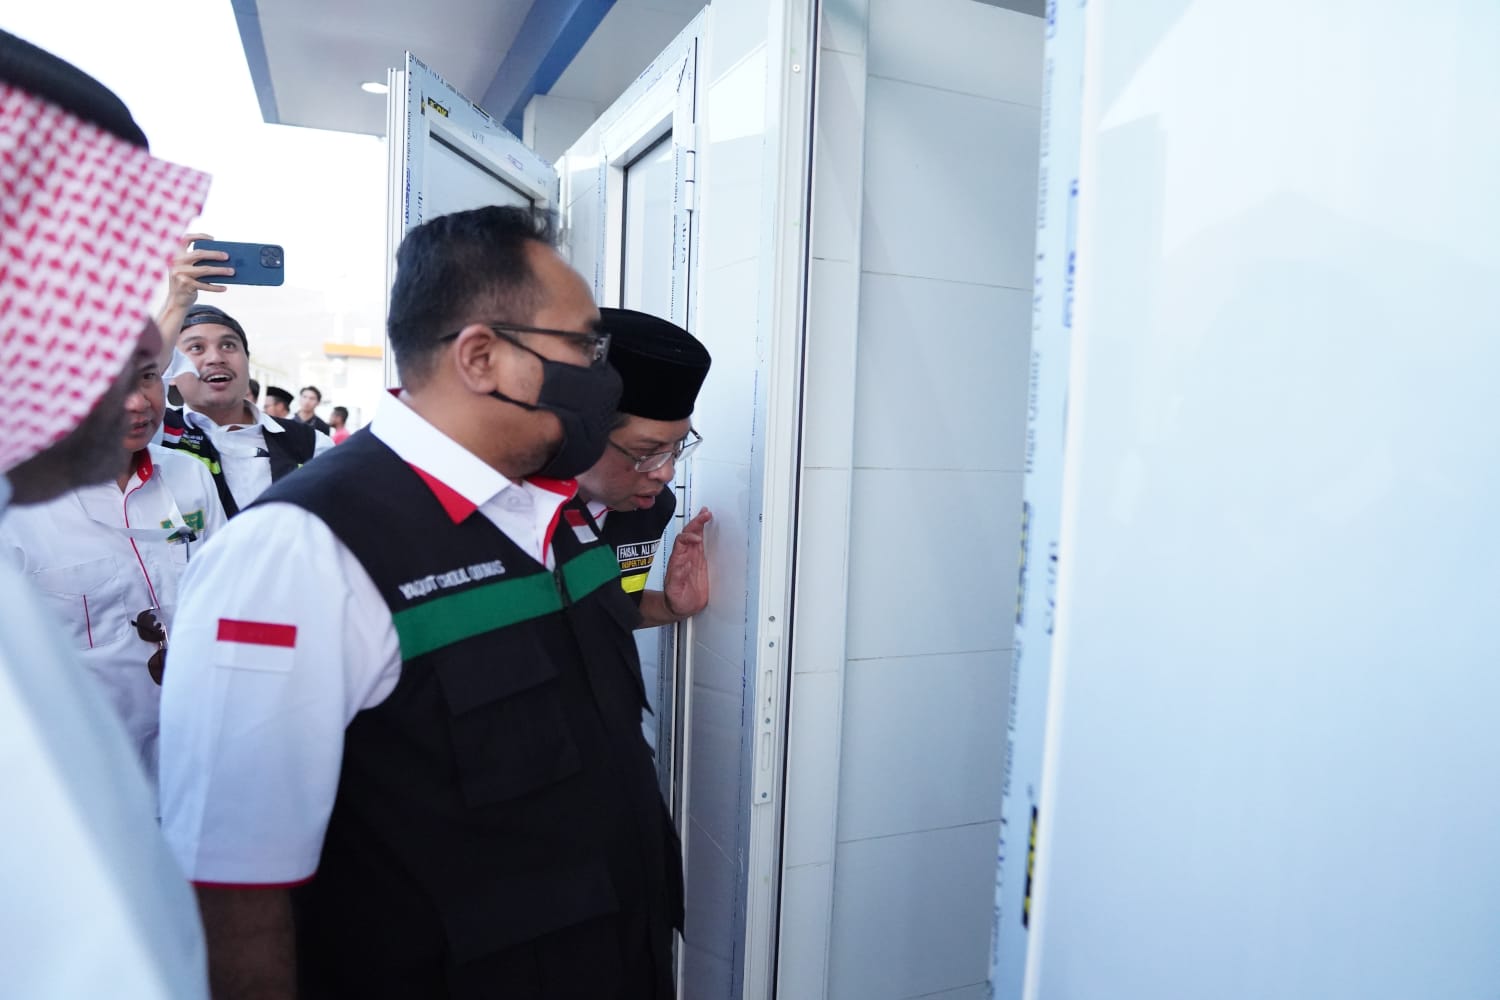 Menteri Agama Tinjau Tenda, Dapur, Toilet di Arafah, Ini Hasilnya